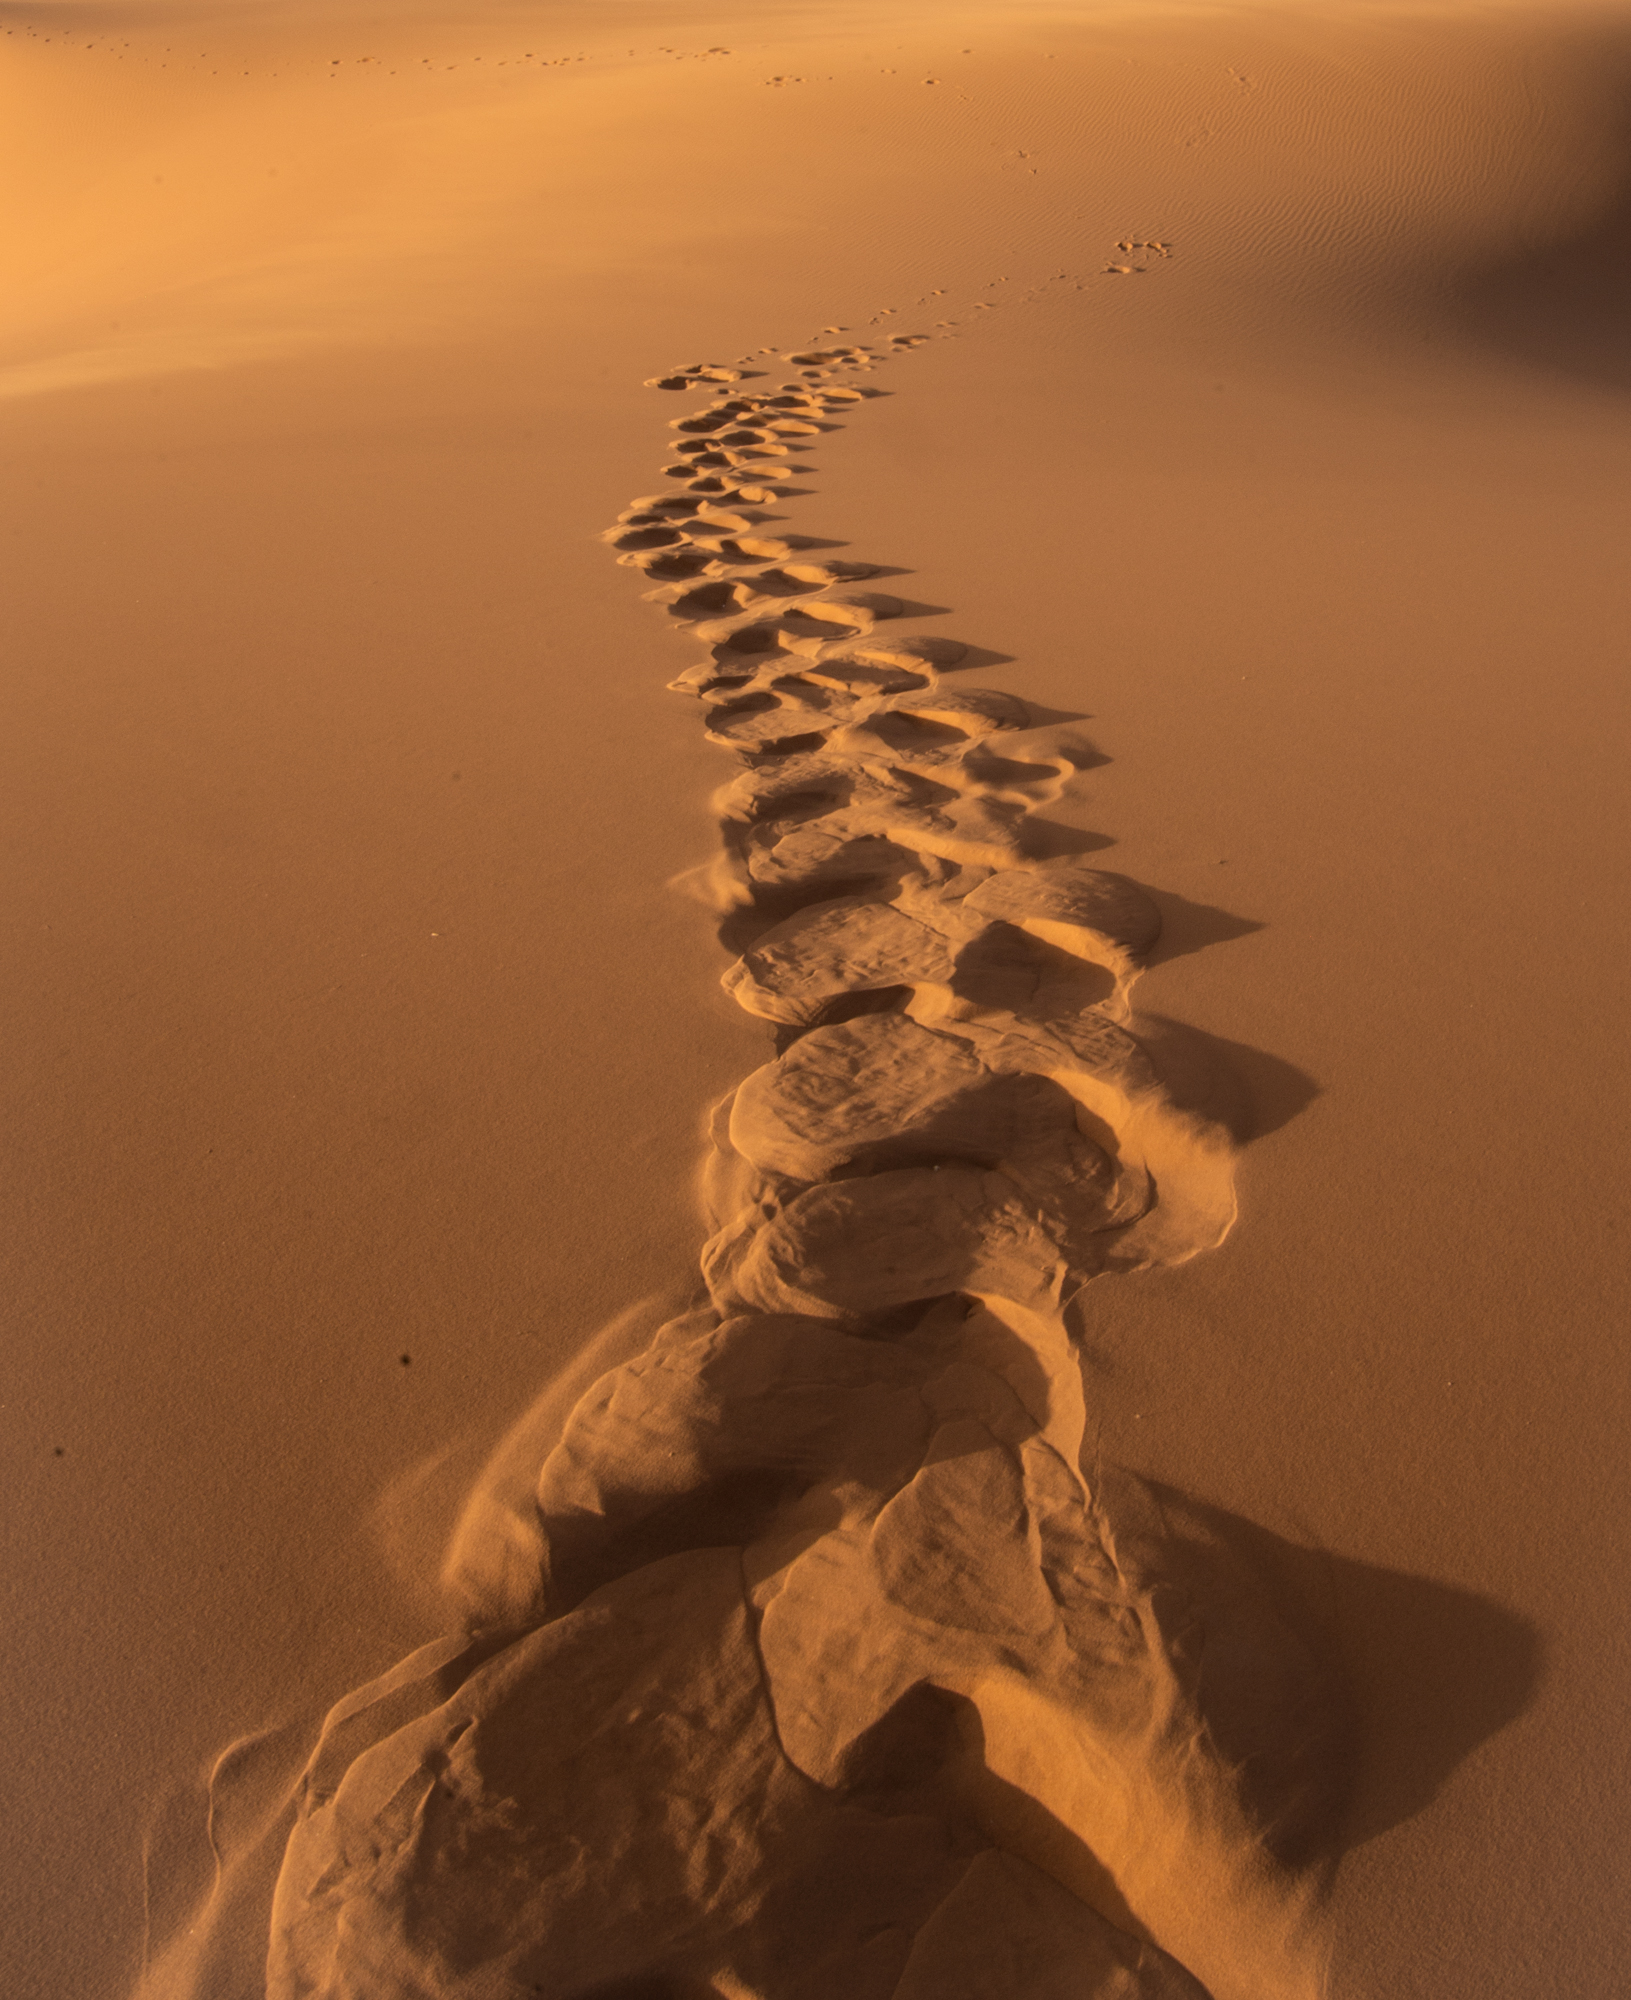 Tracks on the sand...